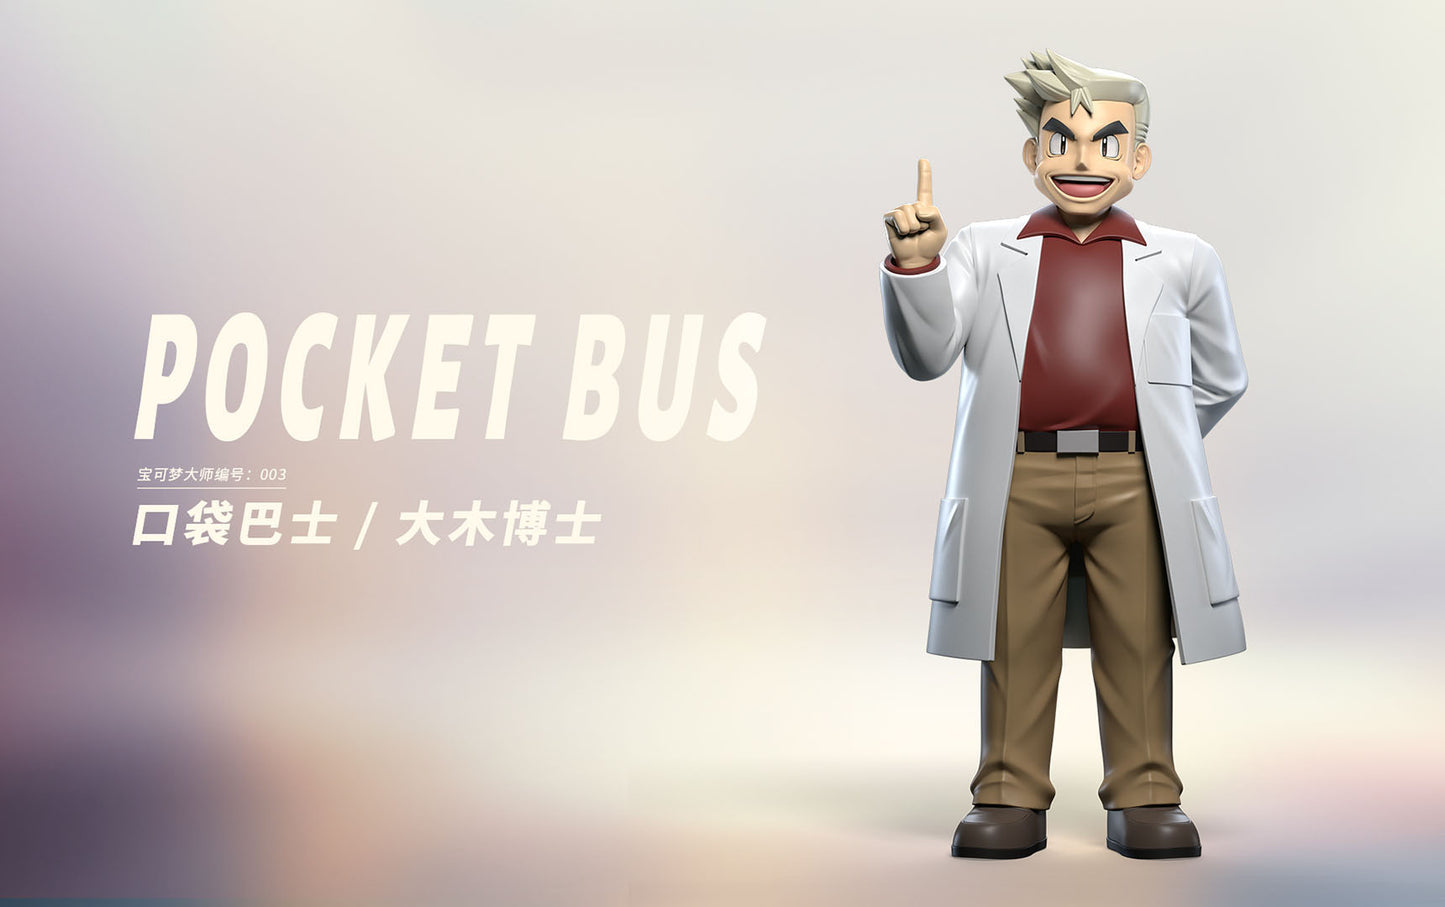 〖 Sold Out〗Pokemon Scale World Professor Samuel Oak 1:20 - Pocket Bus Studio